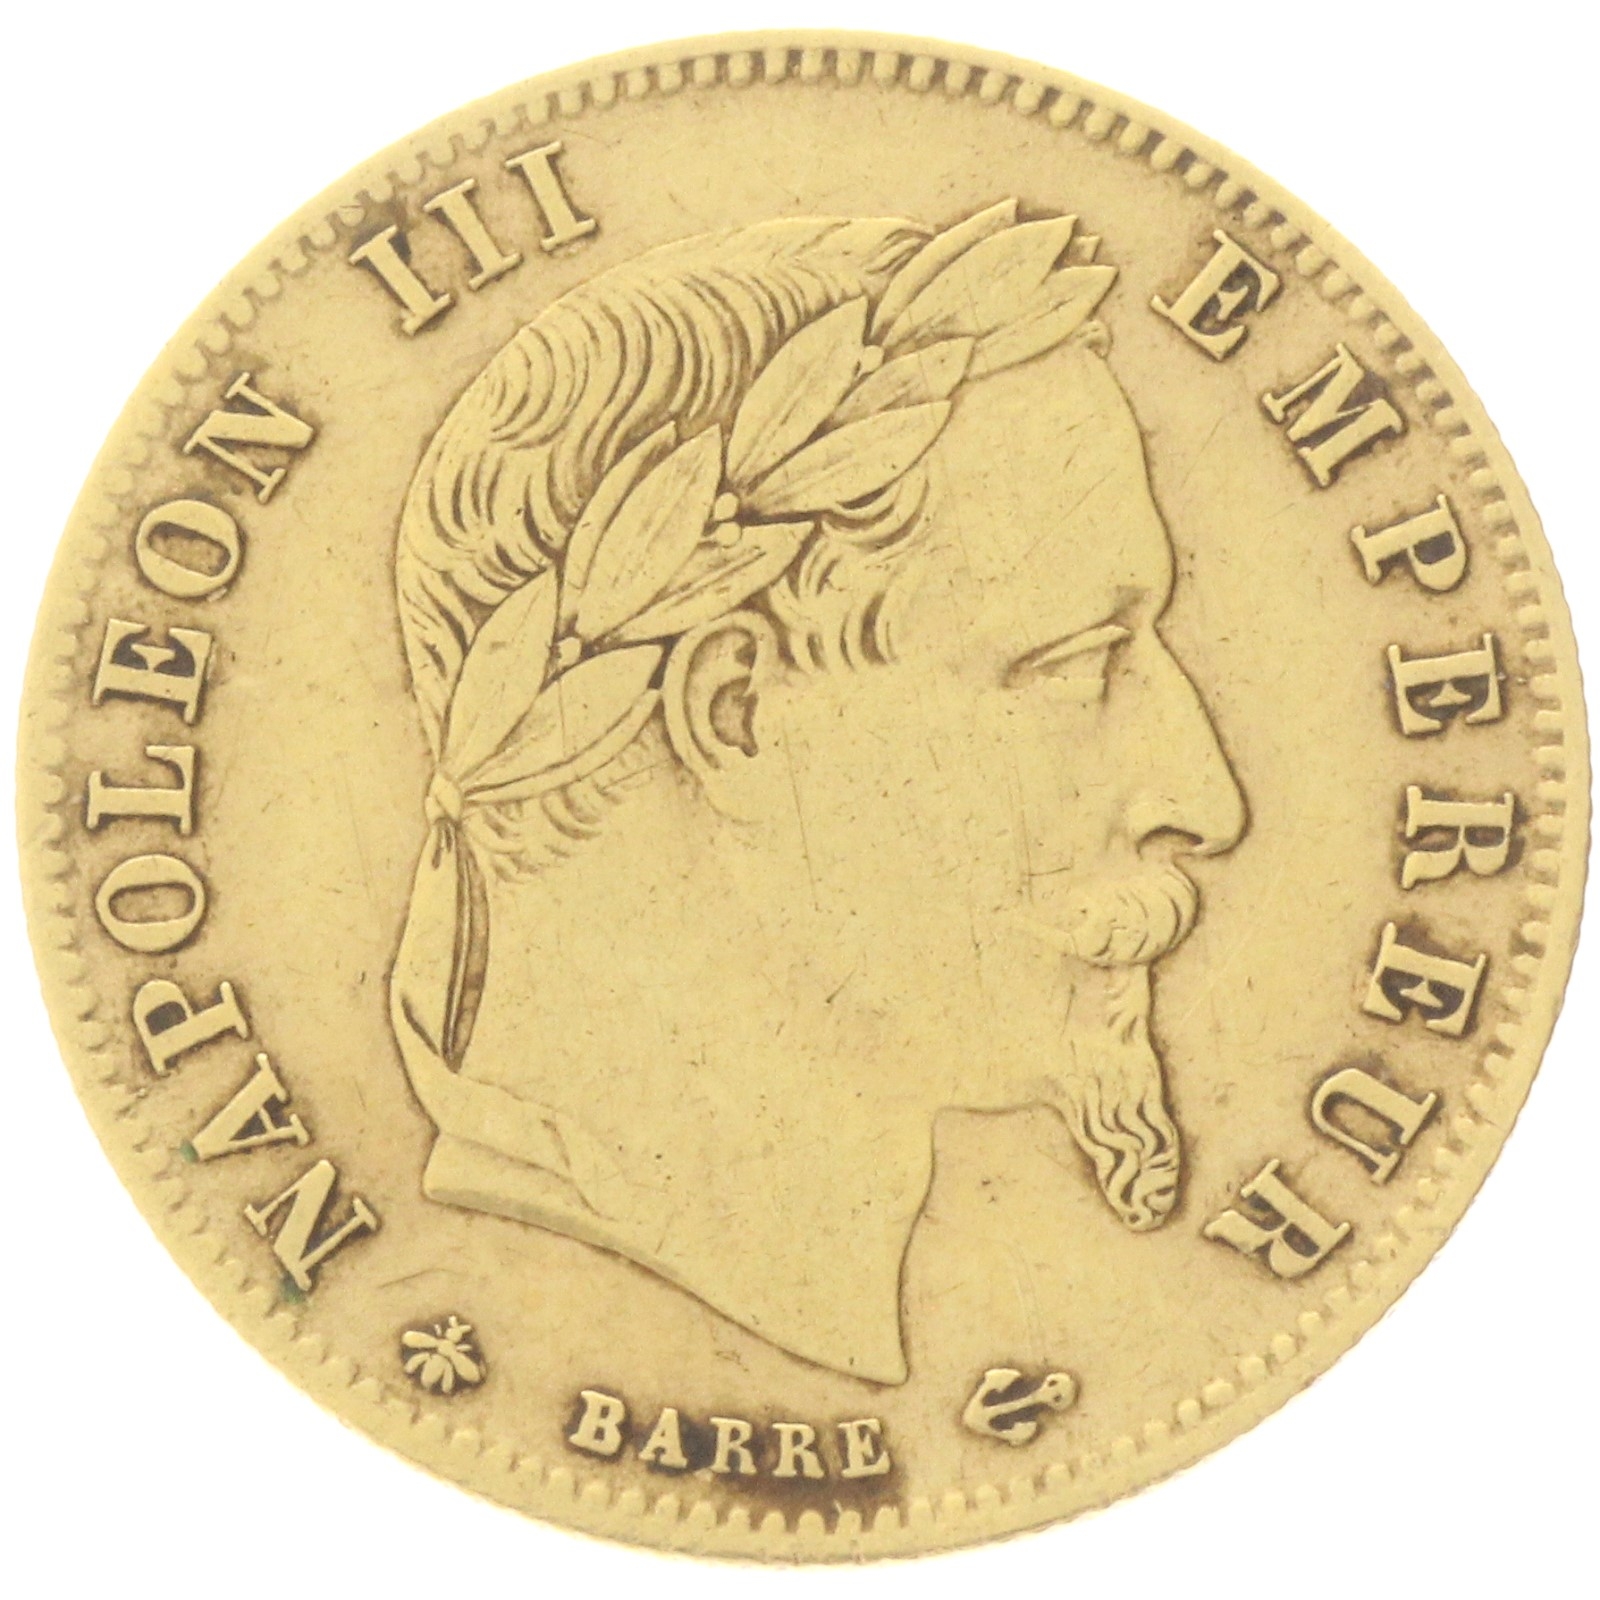 France - 5 francs - 1863 - A - Napoleon III